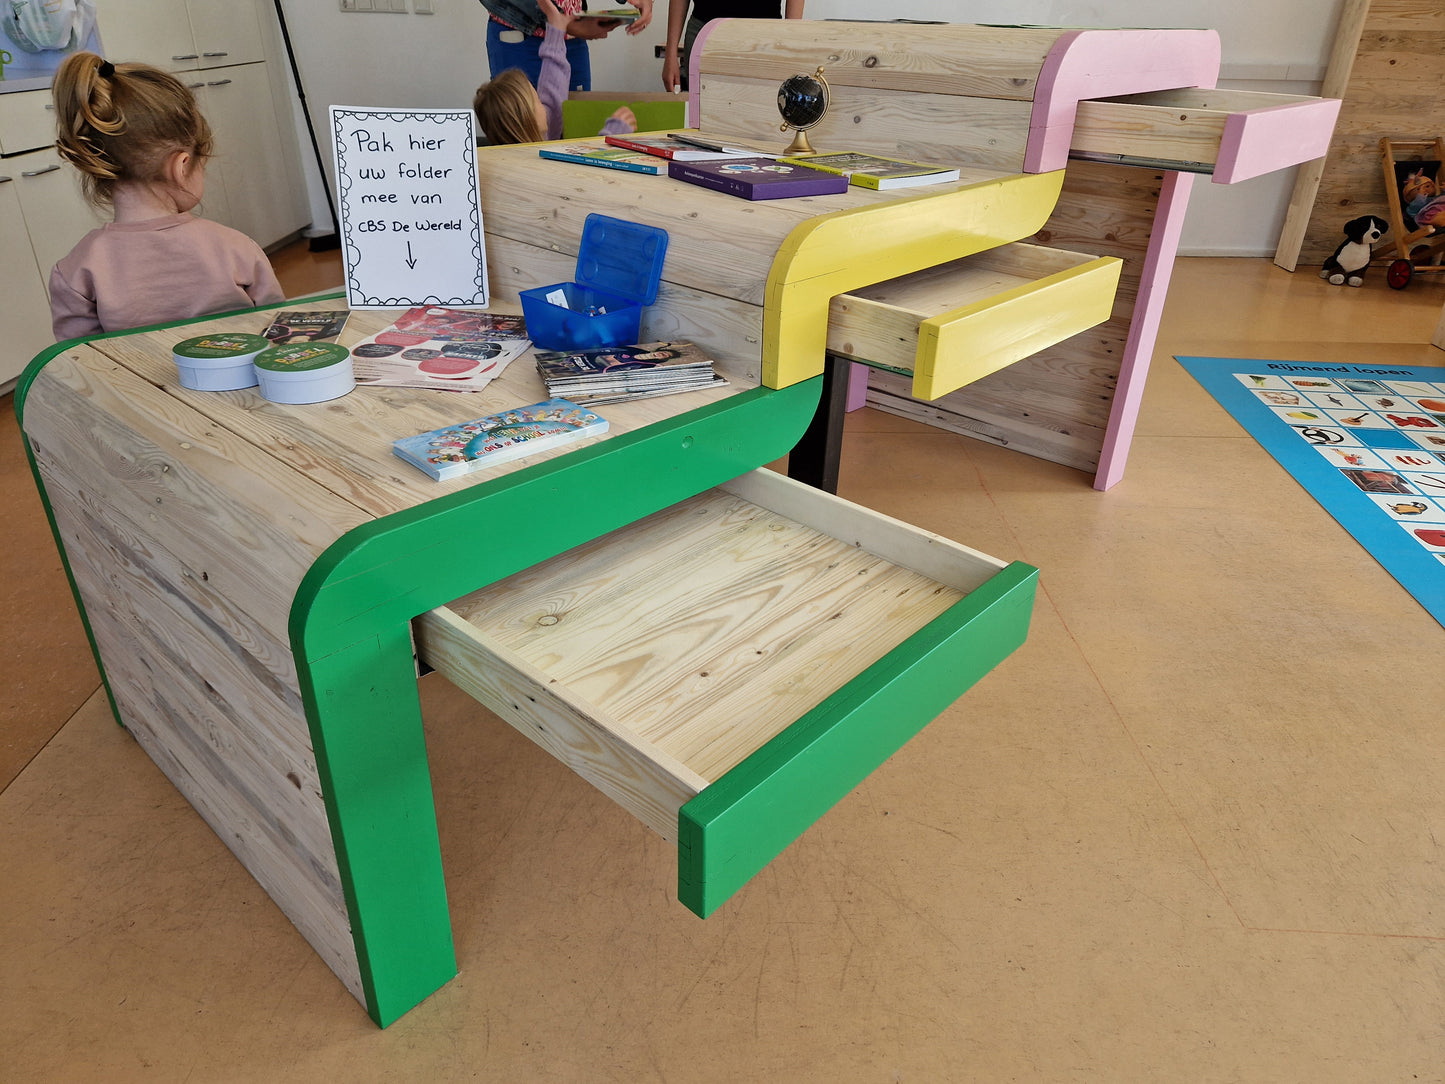 Duurzame meubels voor een basisschool met een vernieuwende kijk op onderwijs.